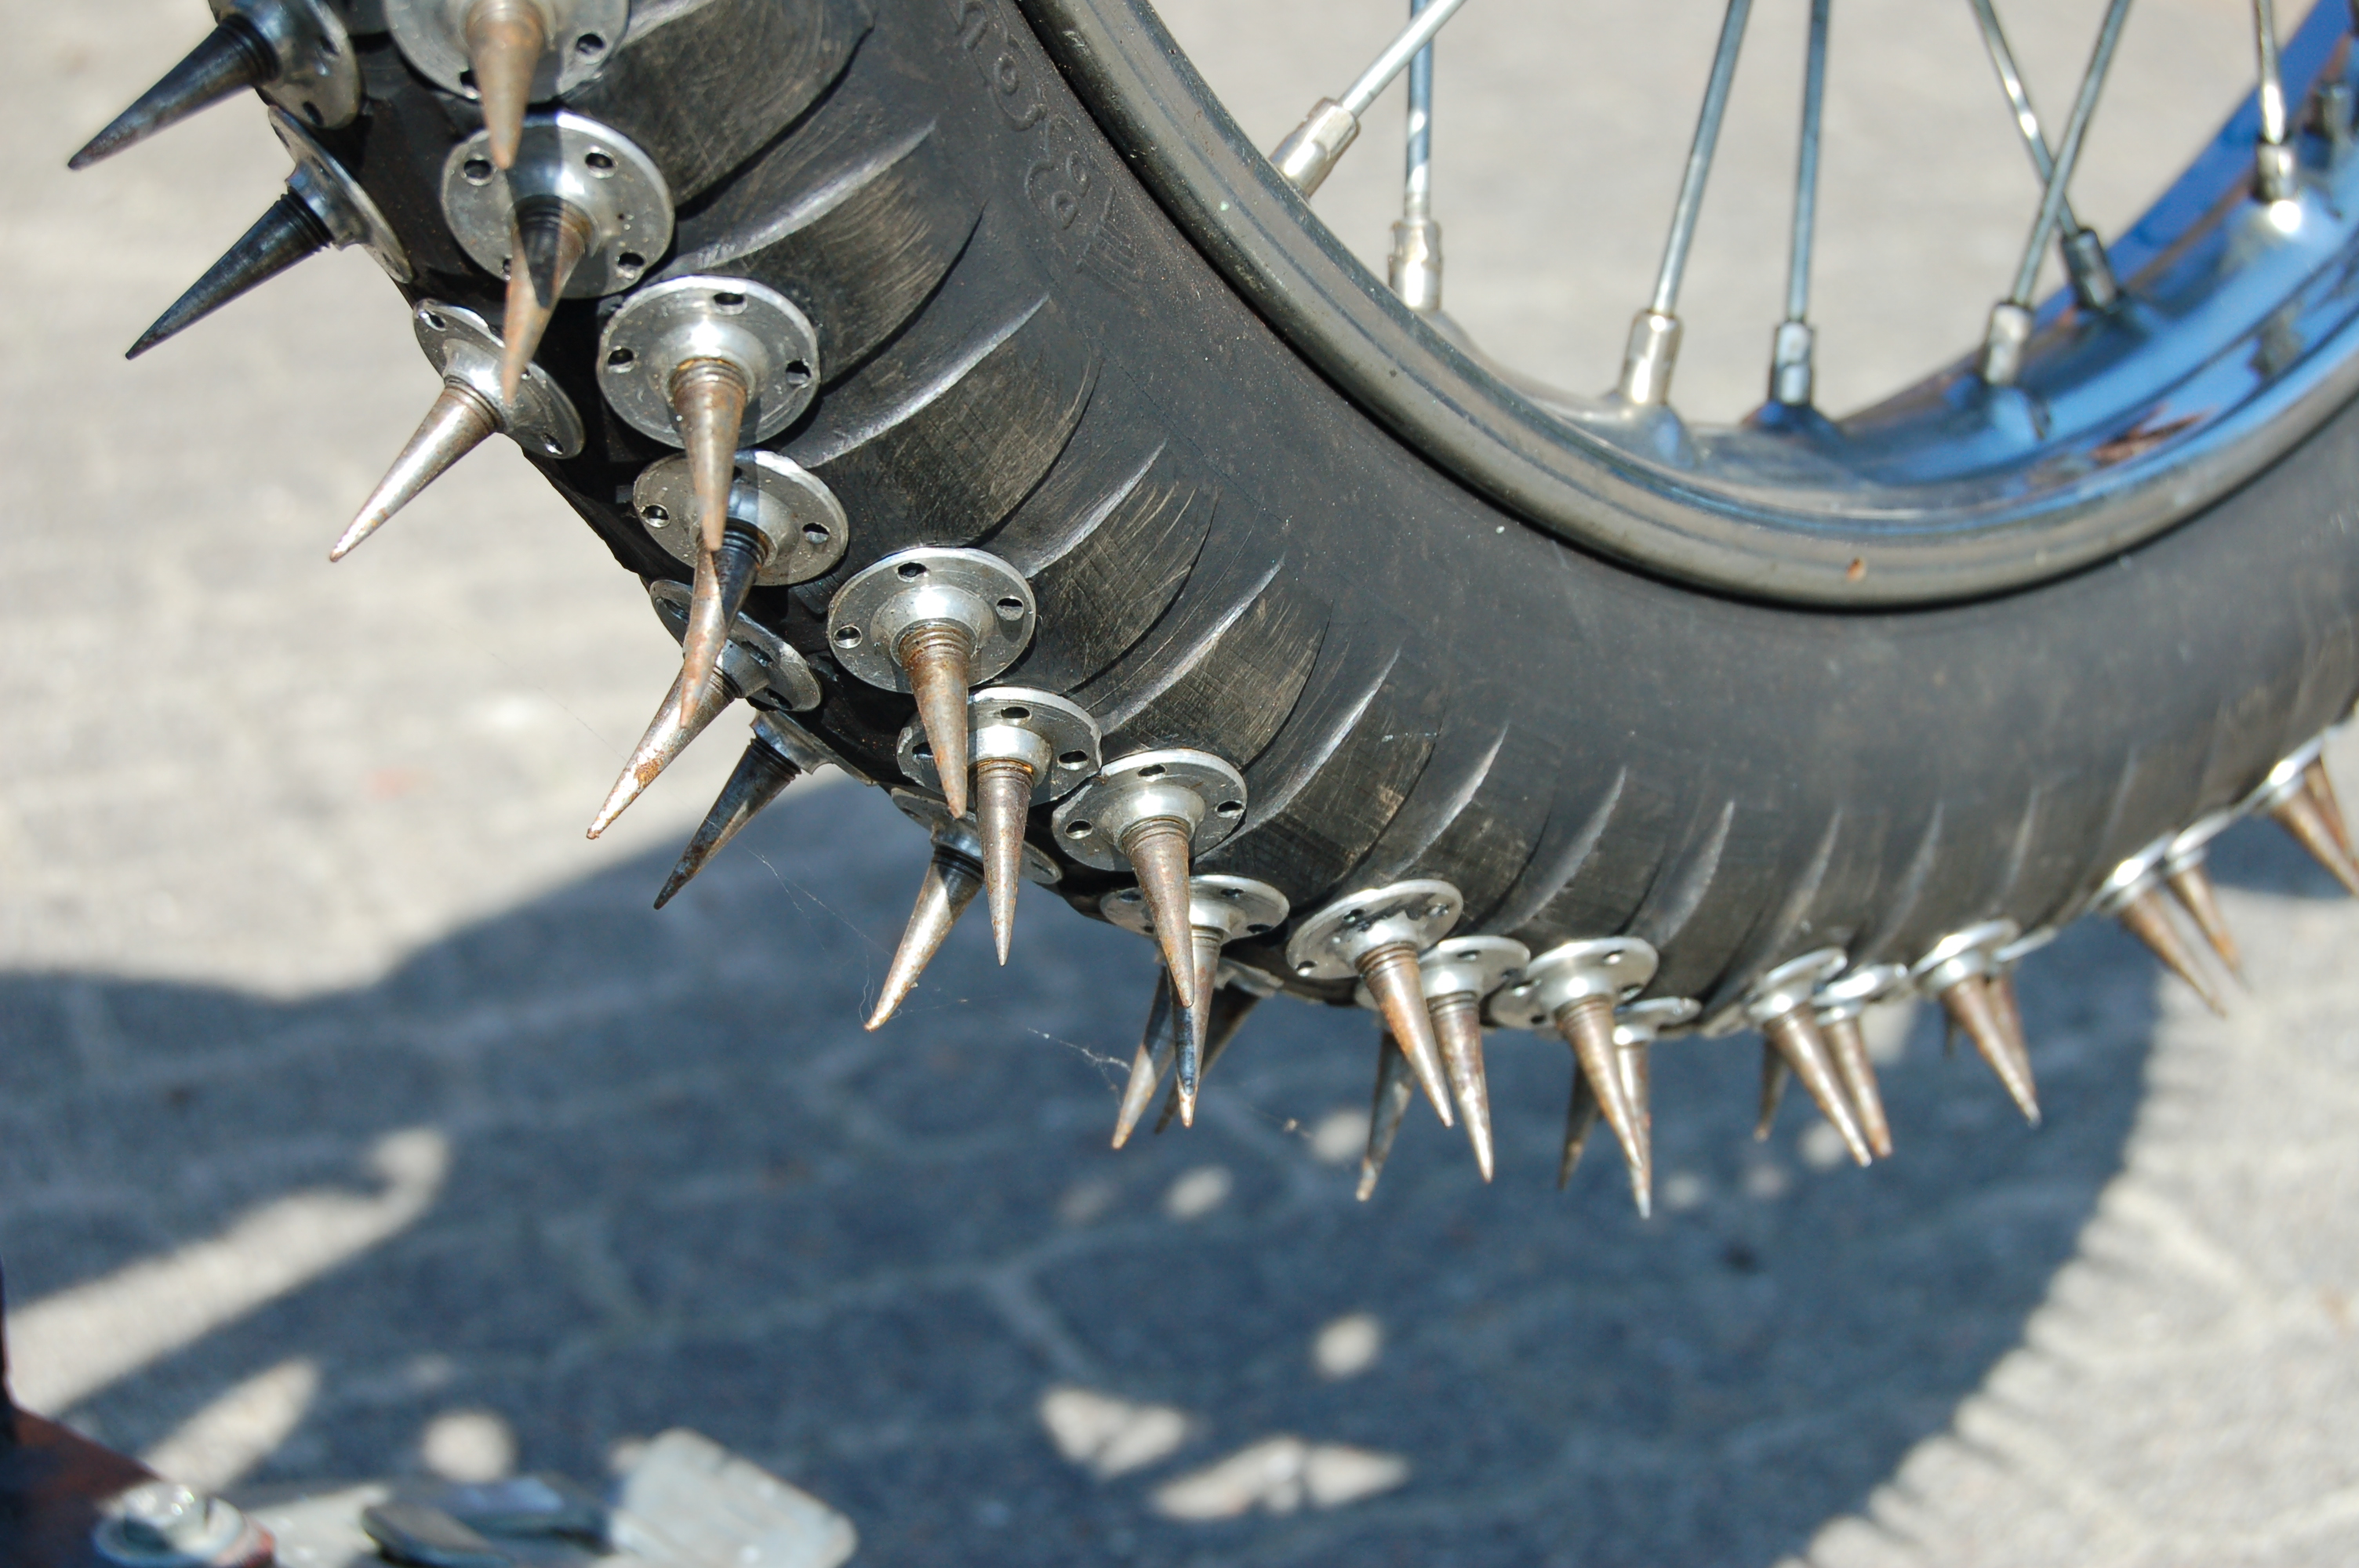 Hřeby v pneumatice motocyklu pro ledovou plochou dráhu (Foto: Pavel Fišer)